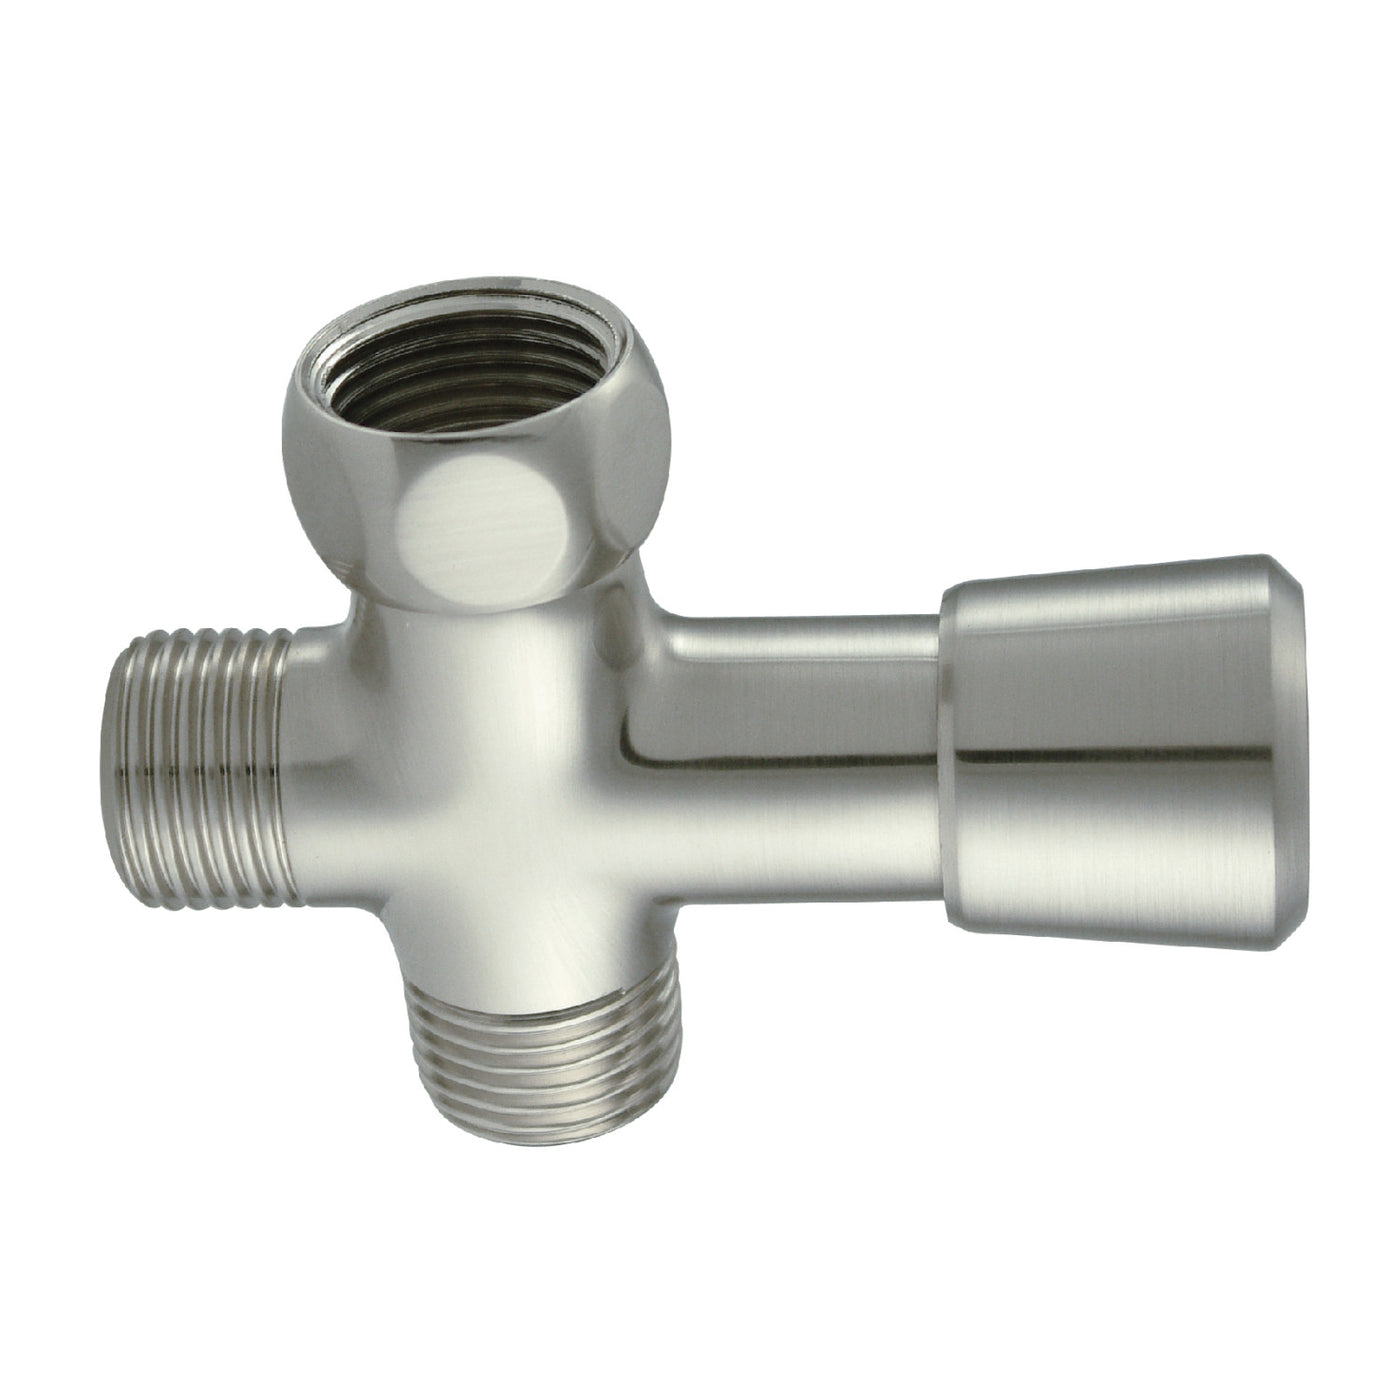 Elements of Design DK161A8 Shower Diverter, Brushed Nickel